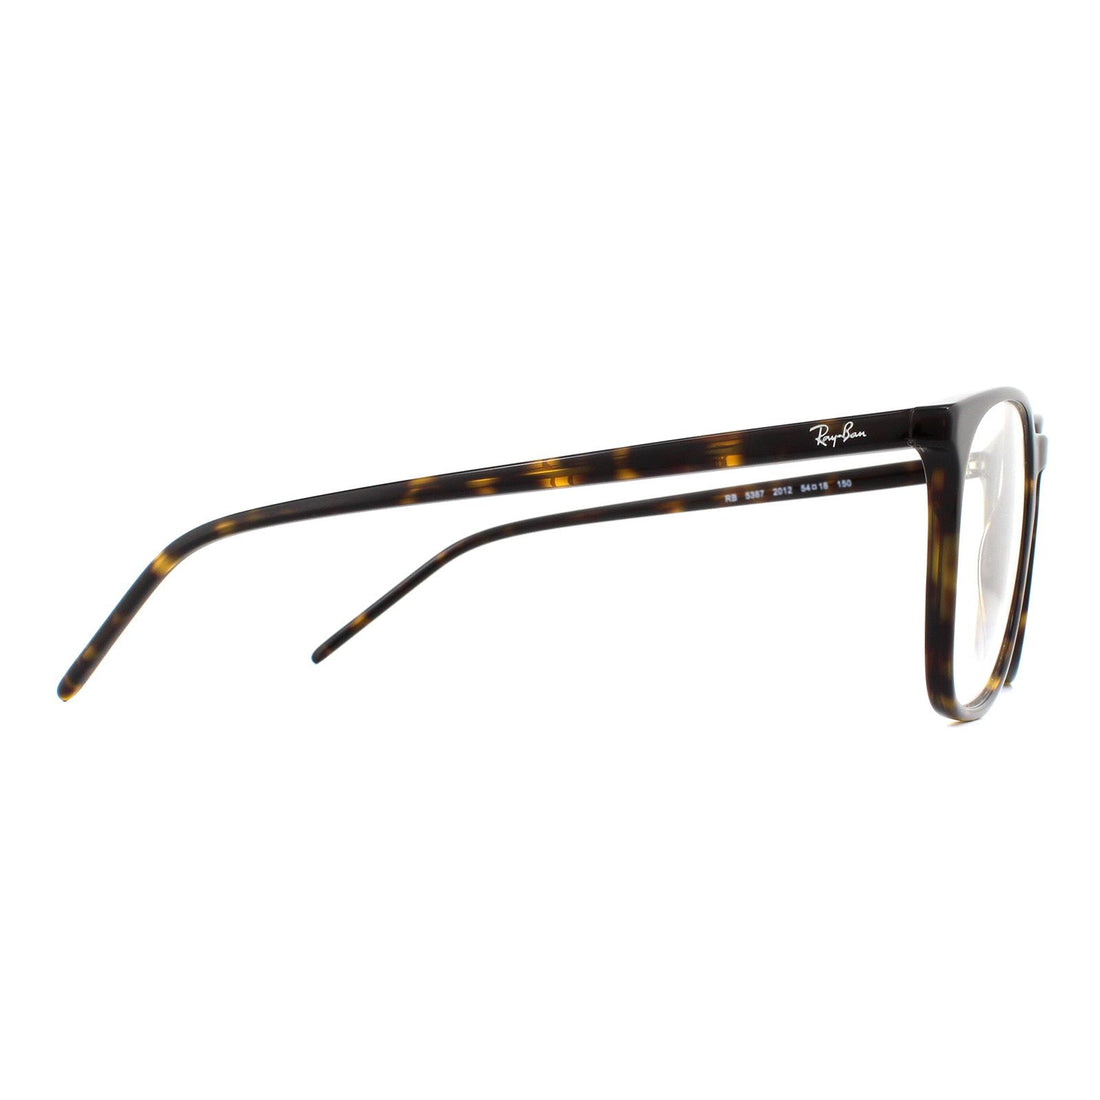 Ray-Ban Glasses Frames RB5387 2012 Havana 54mm